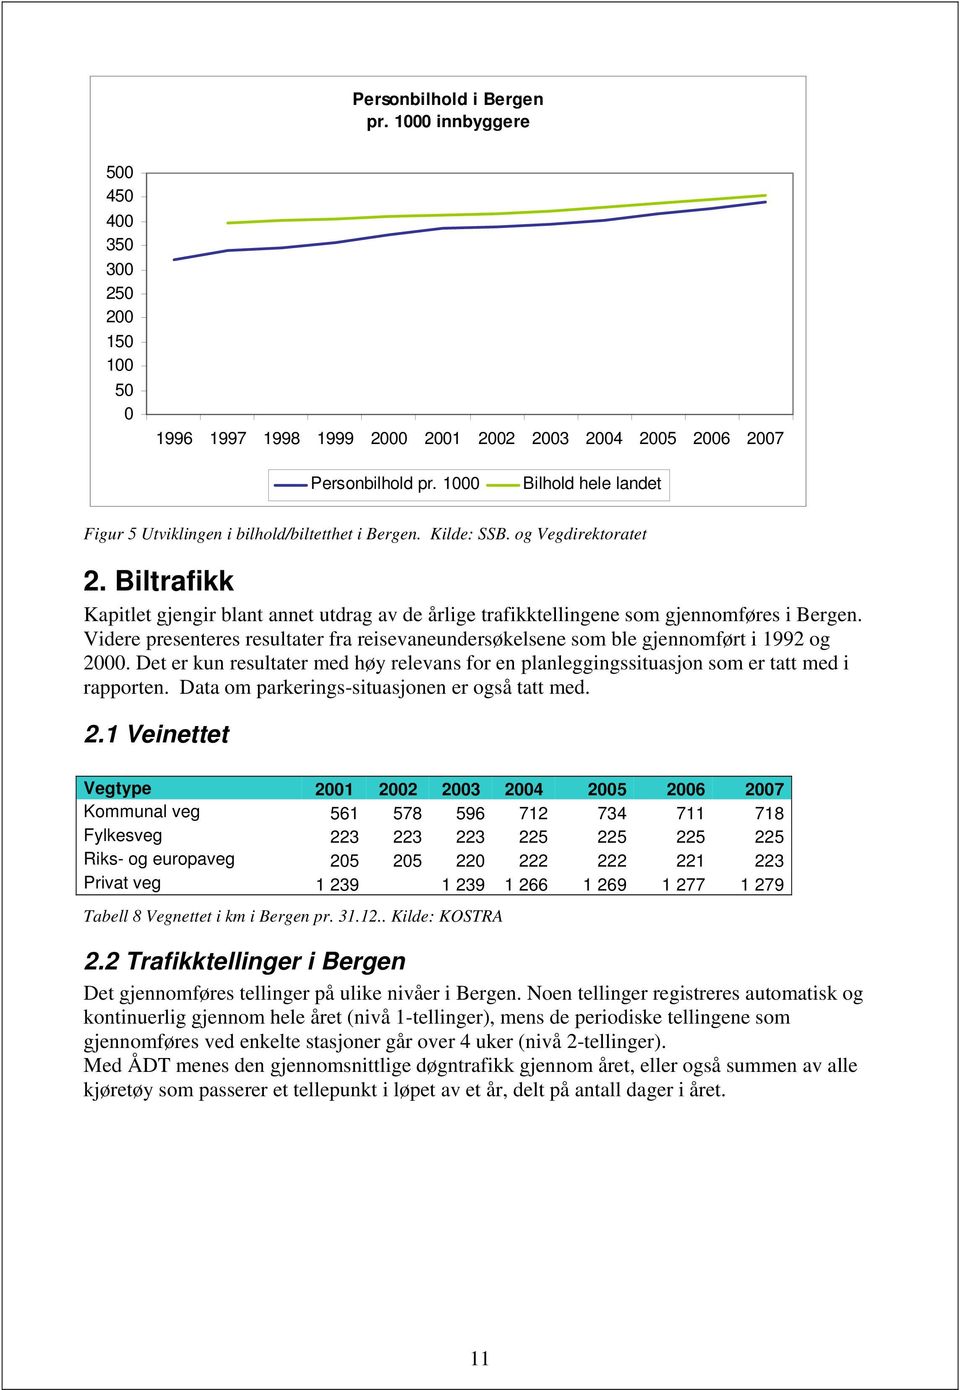 Biltrafikk Kapitlet gjengir blant annet utdrag av de årlige trafikktellingene som gjennomføres i Bergen. Videre presenteres resultater fra reisevaneundersøkelsene som ble gjennomført i 1992 og 2000.